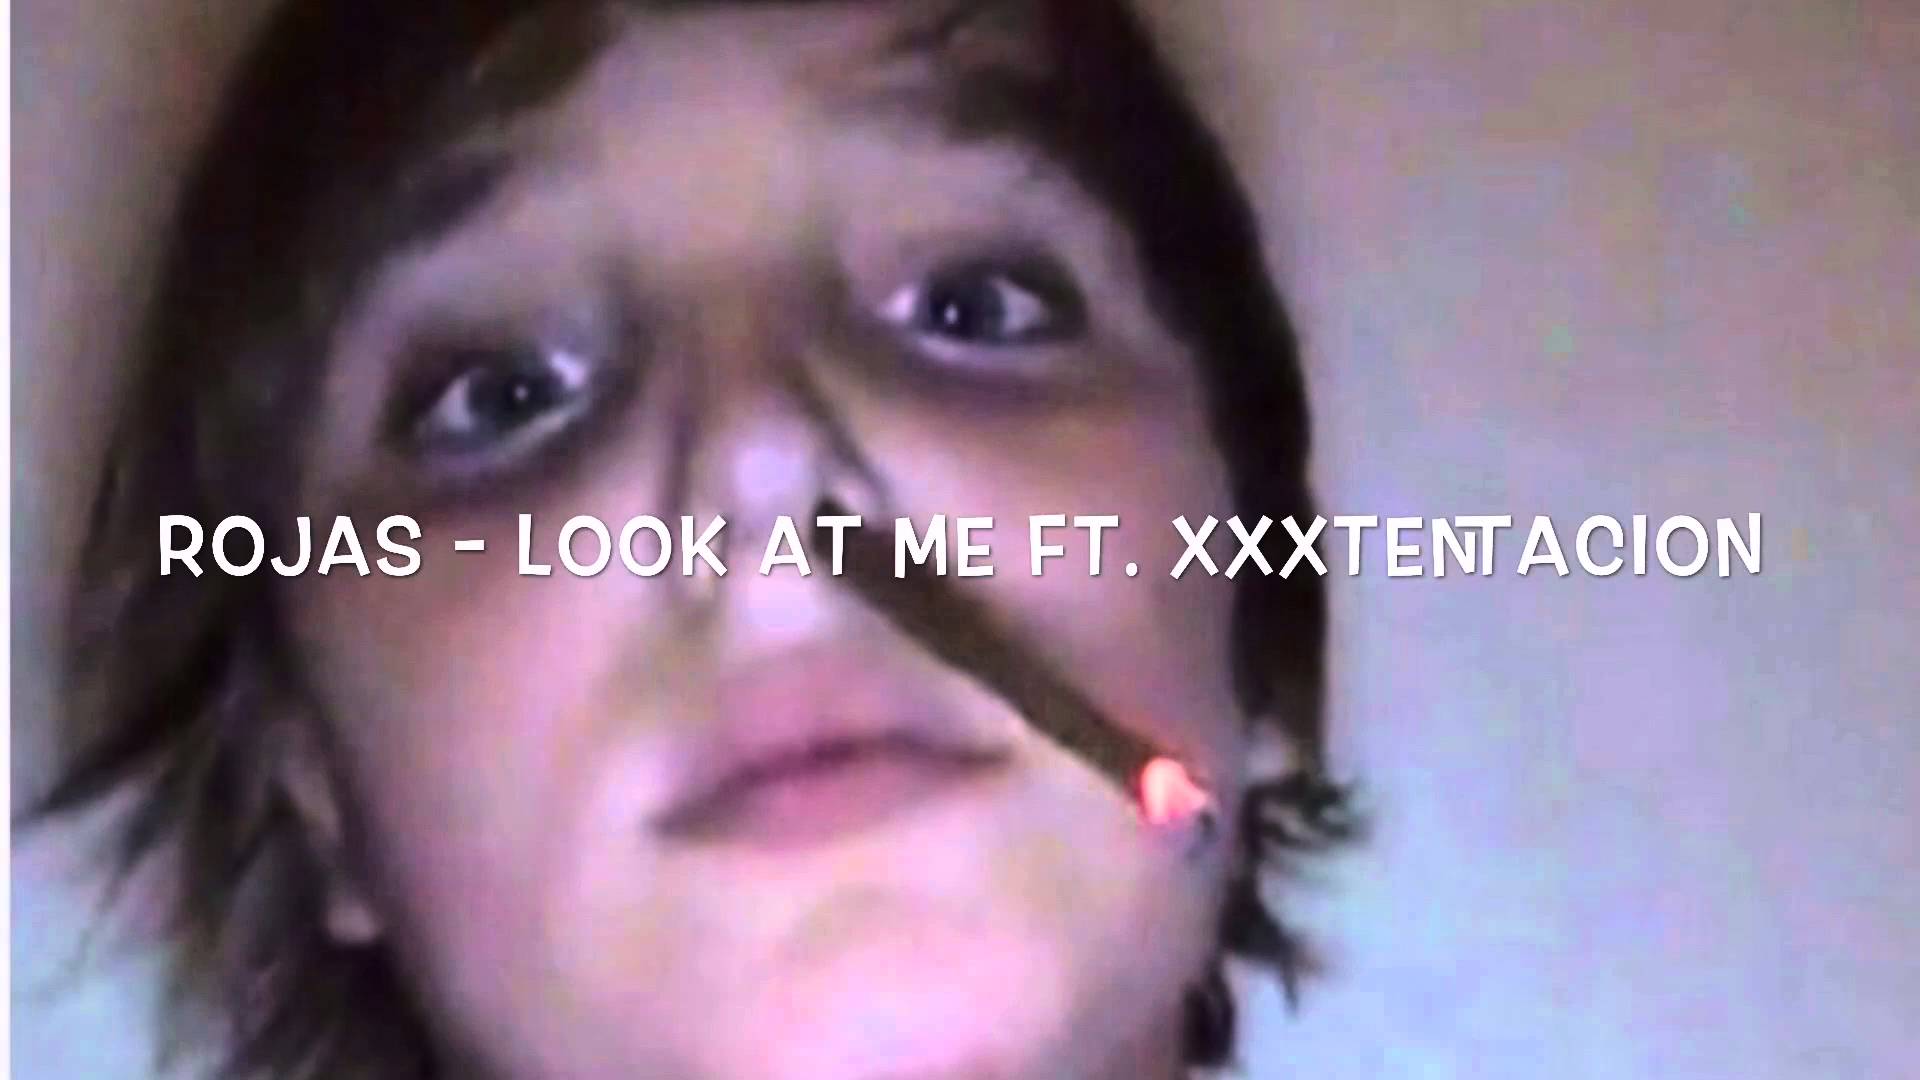 XXXTENTACION-LOOK AT ME - YouTube